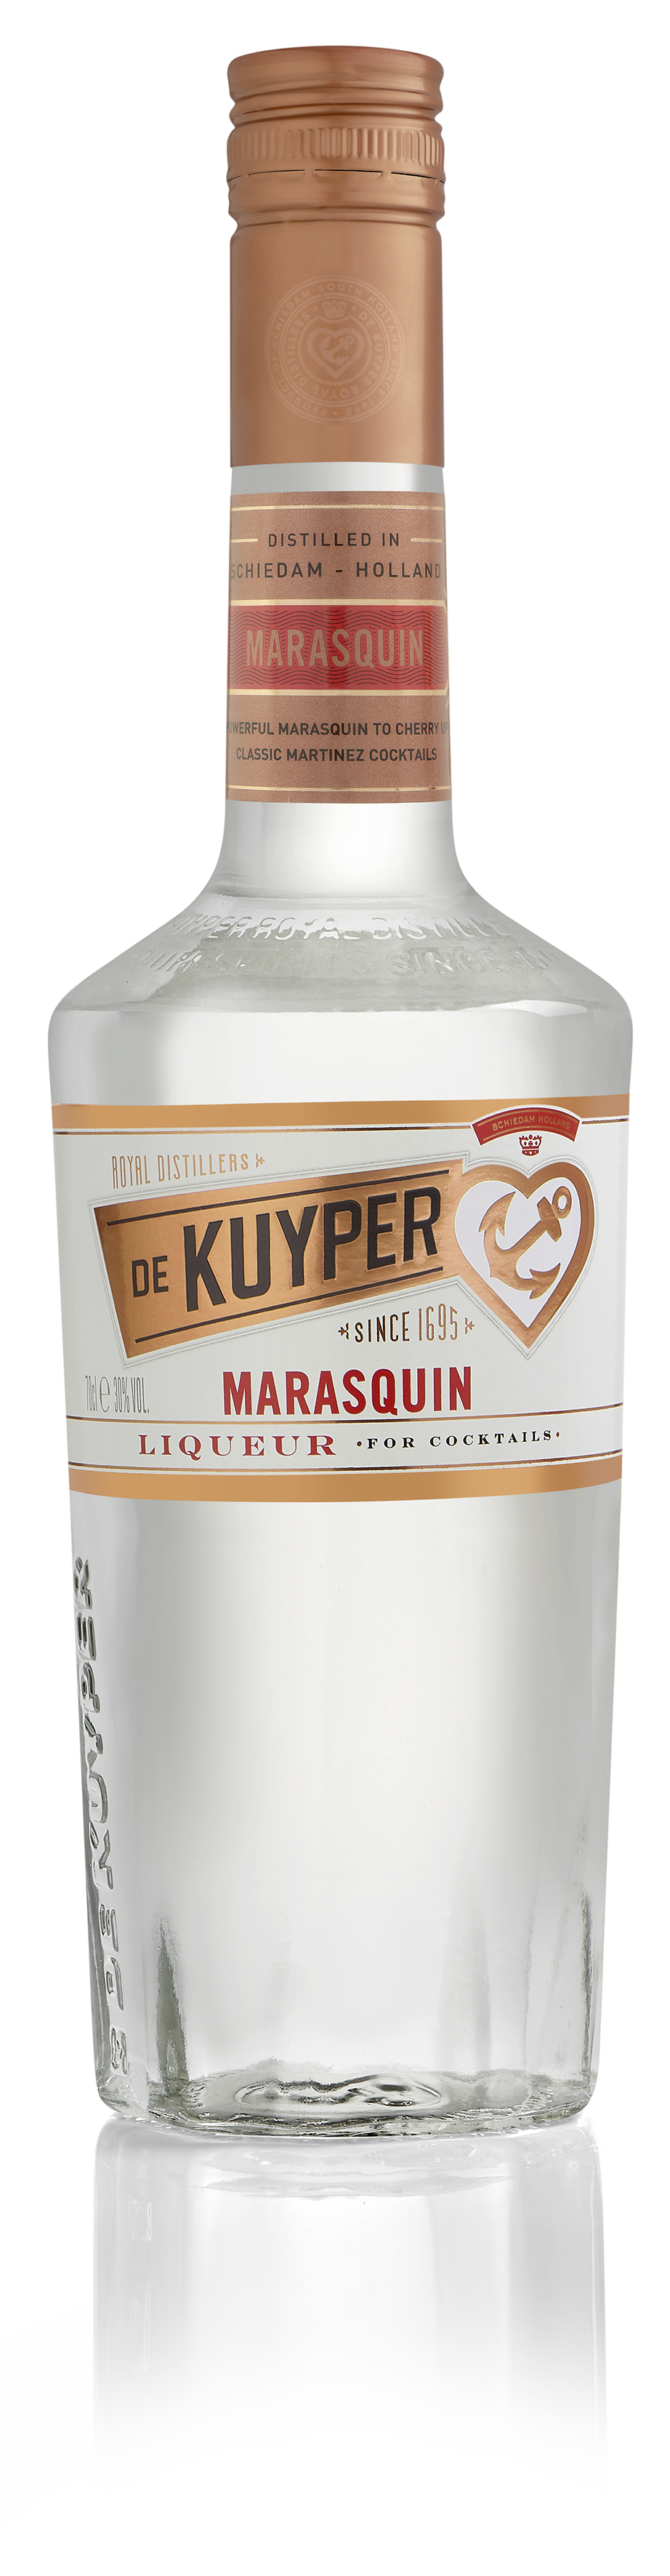 De Kuyper Marasquin - Maraschino Likör 30%vol. 0,7l